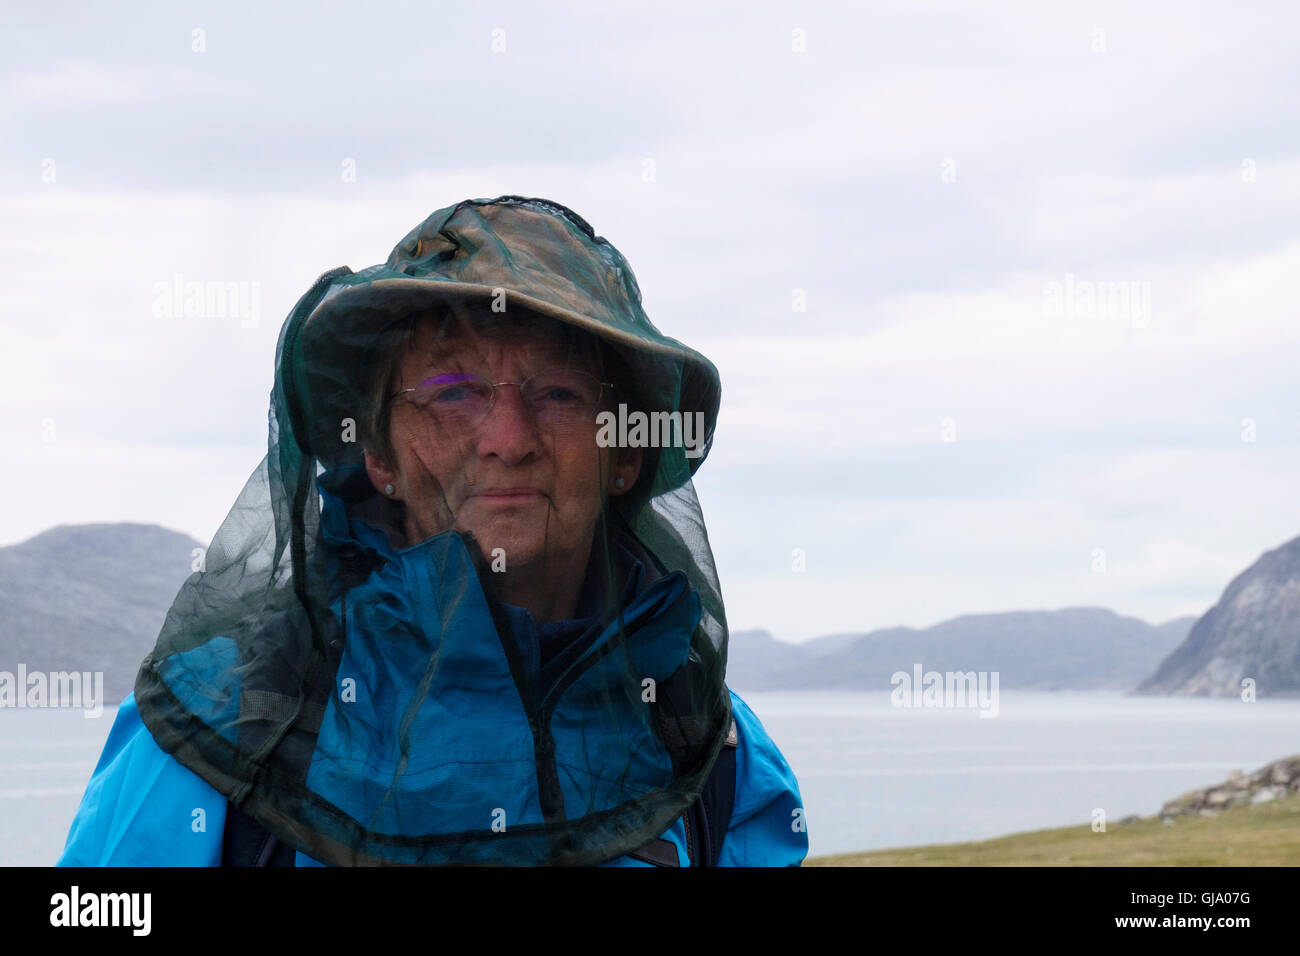 Un senior female tourist portant une moustiquaire pour se protéger contre les insectes piqueurs dans une région rurale sur la côte. Groenland Qaqortoq Banque D'Images